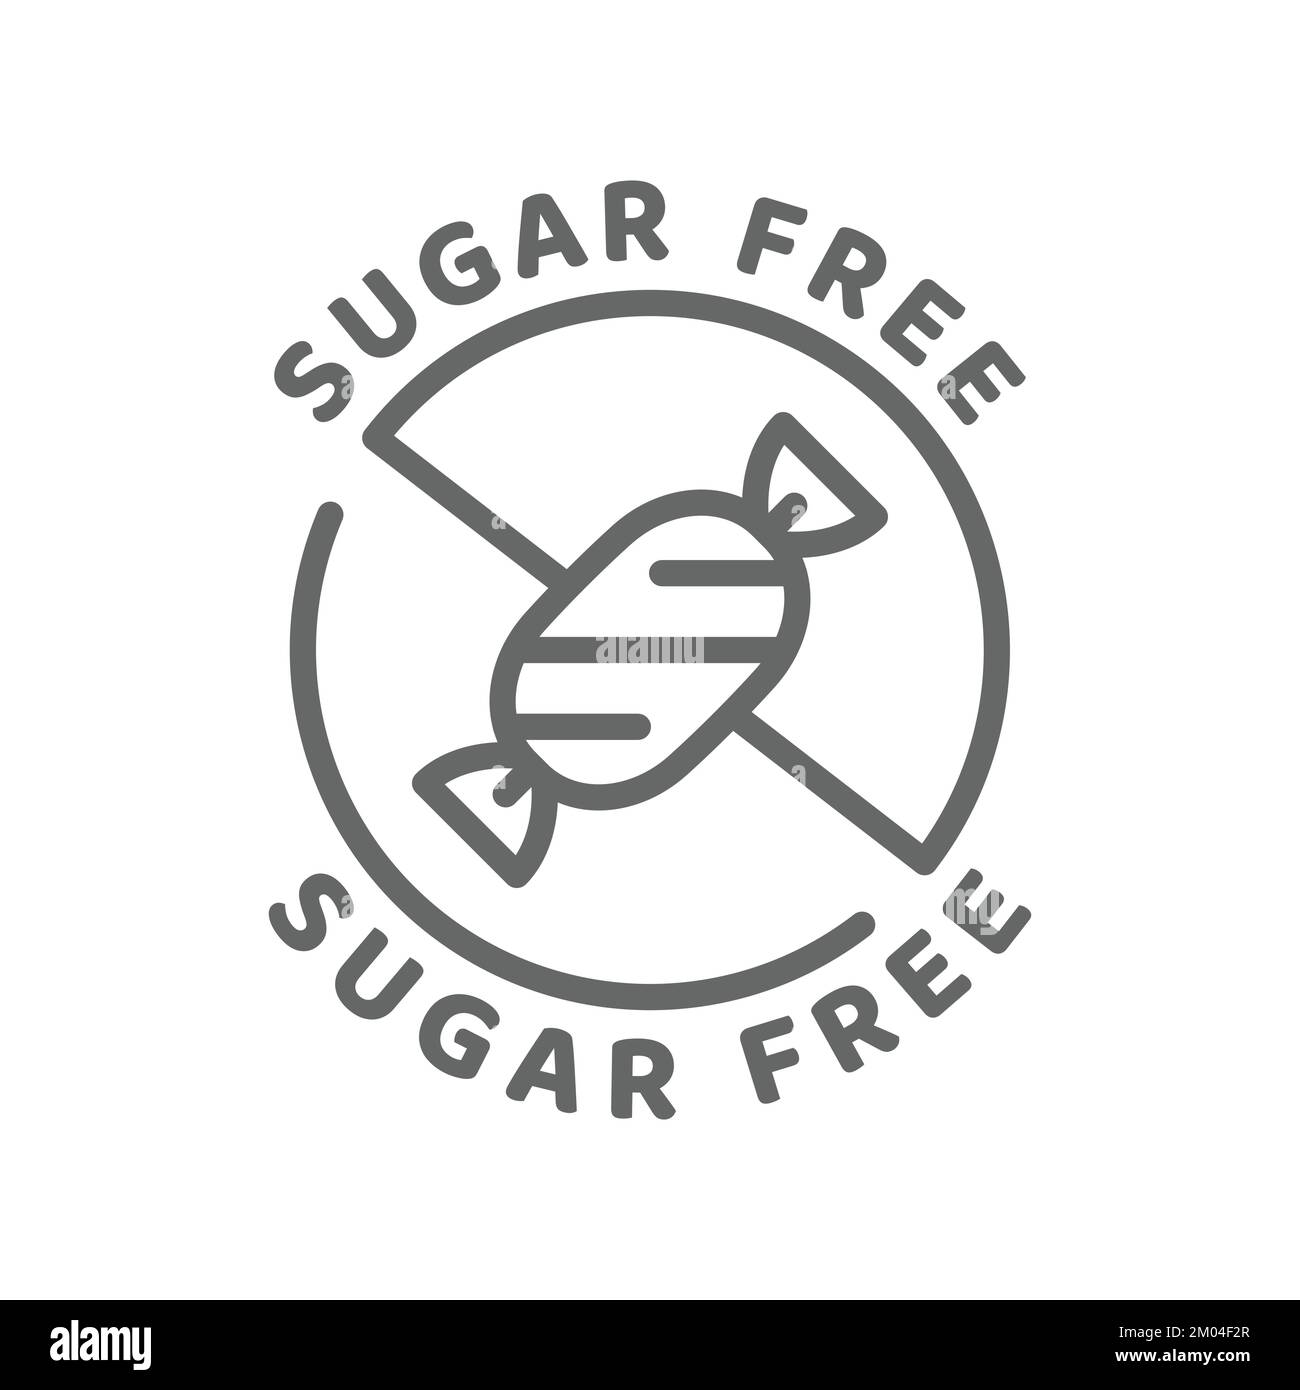 Sugar free vector icon. Ingredients label badge, no sugar. Stock Vector